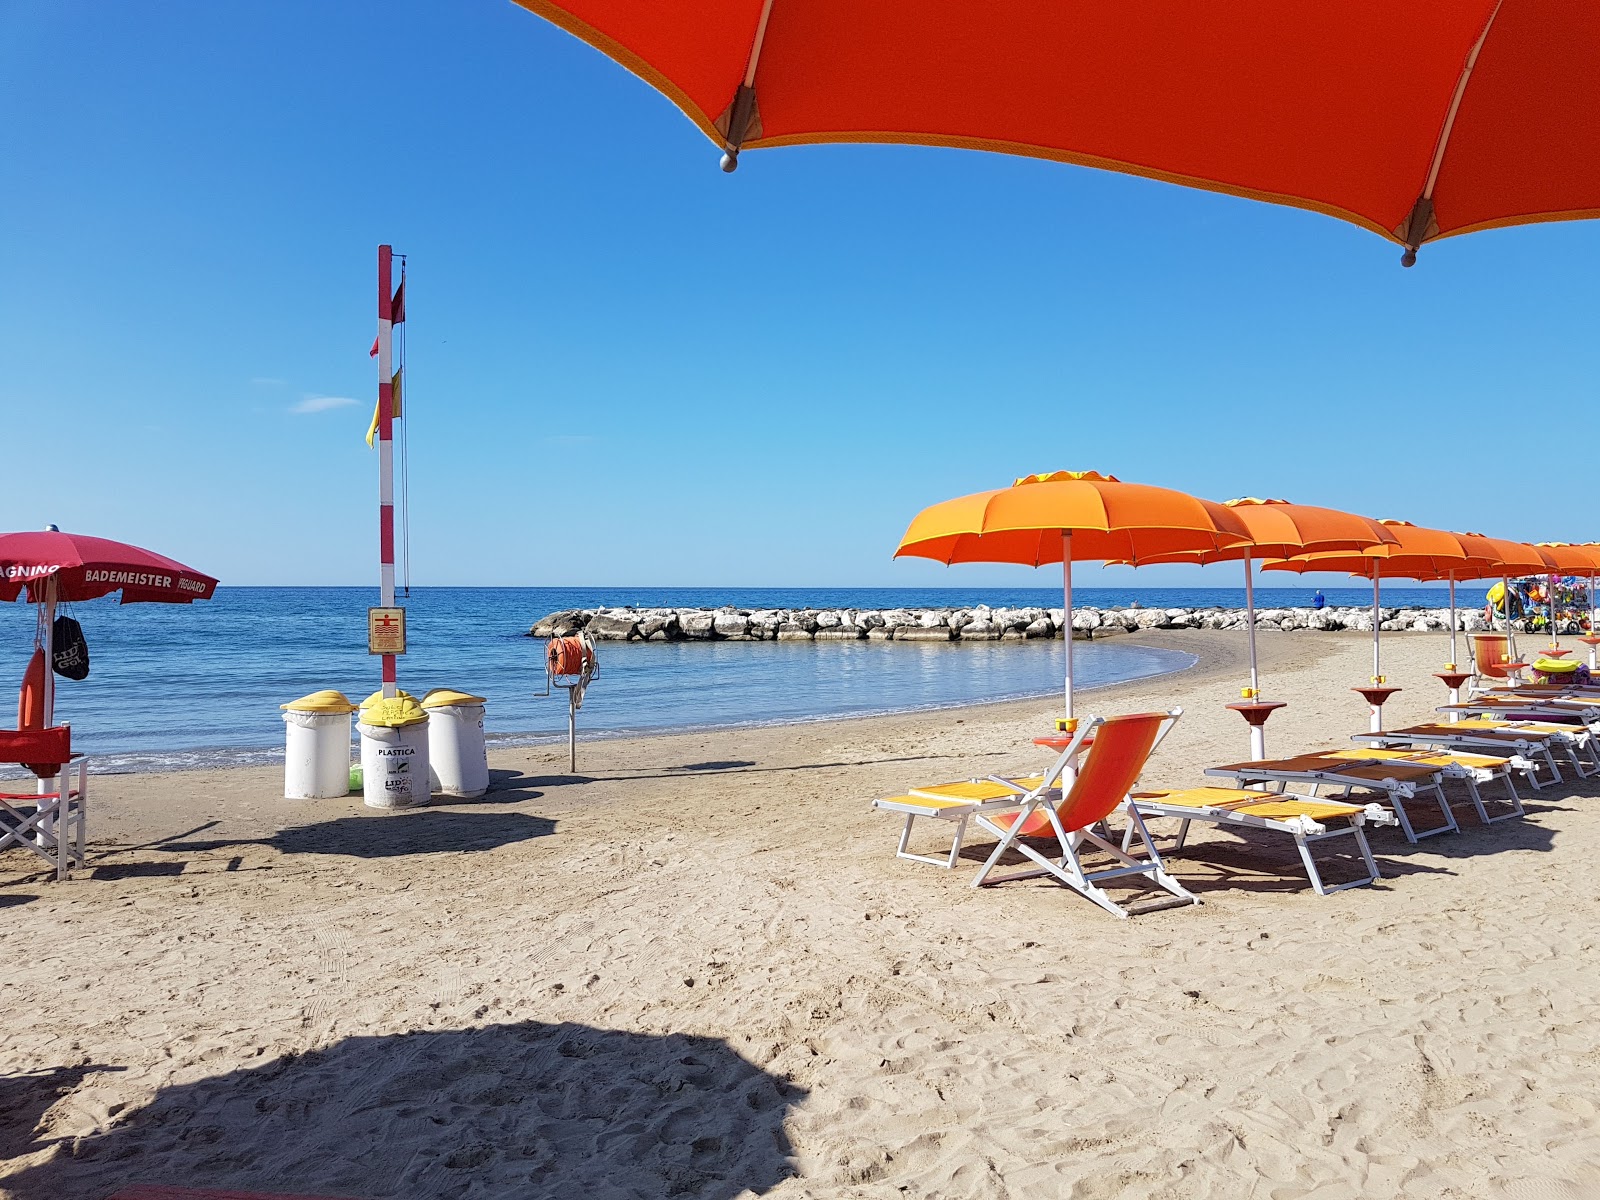 Gianola beach'in fotoğrafı - rahatlamayı sevenler arasında popüler bir yer